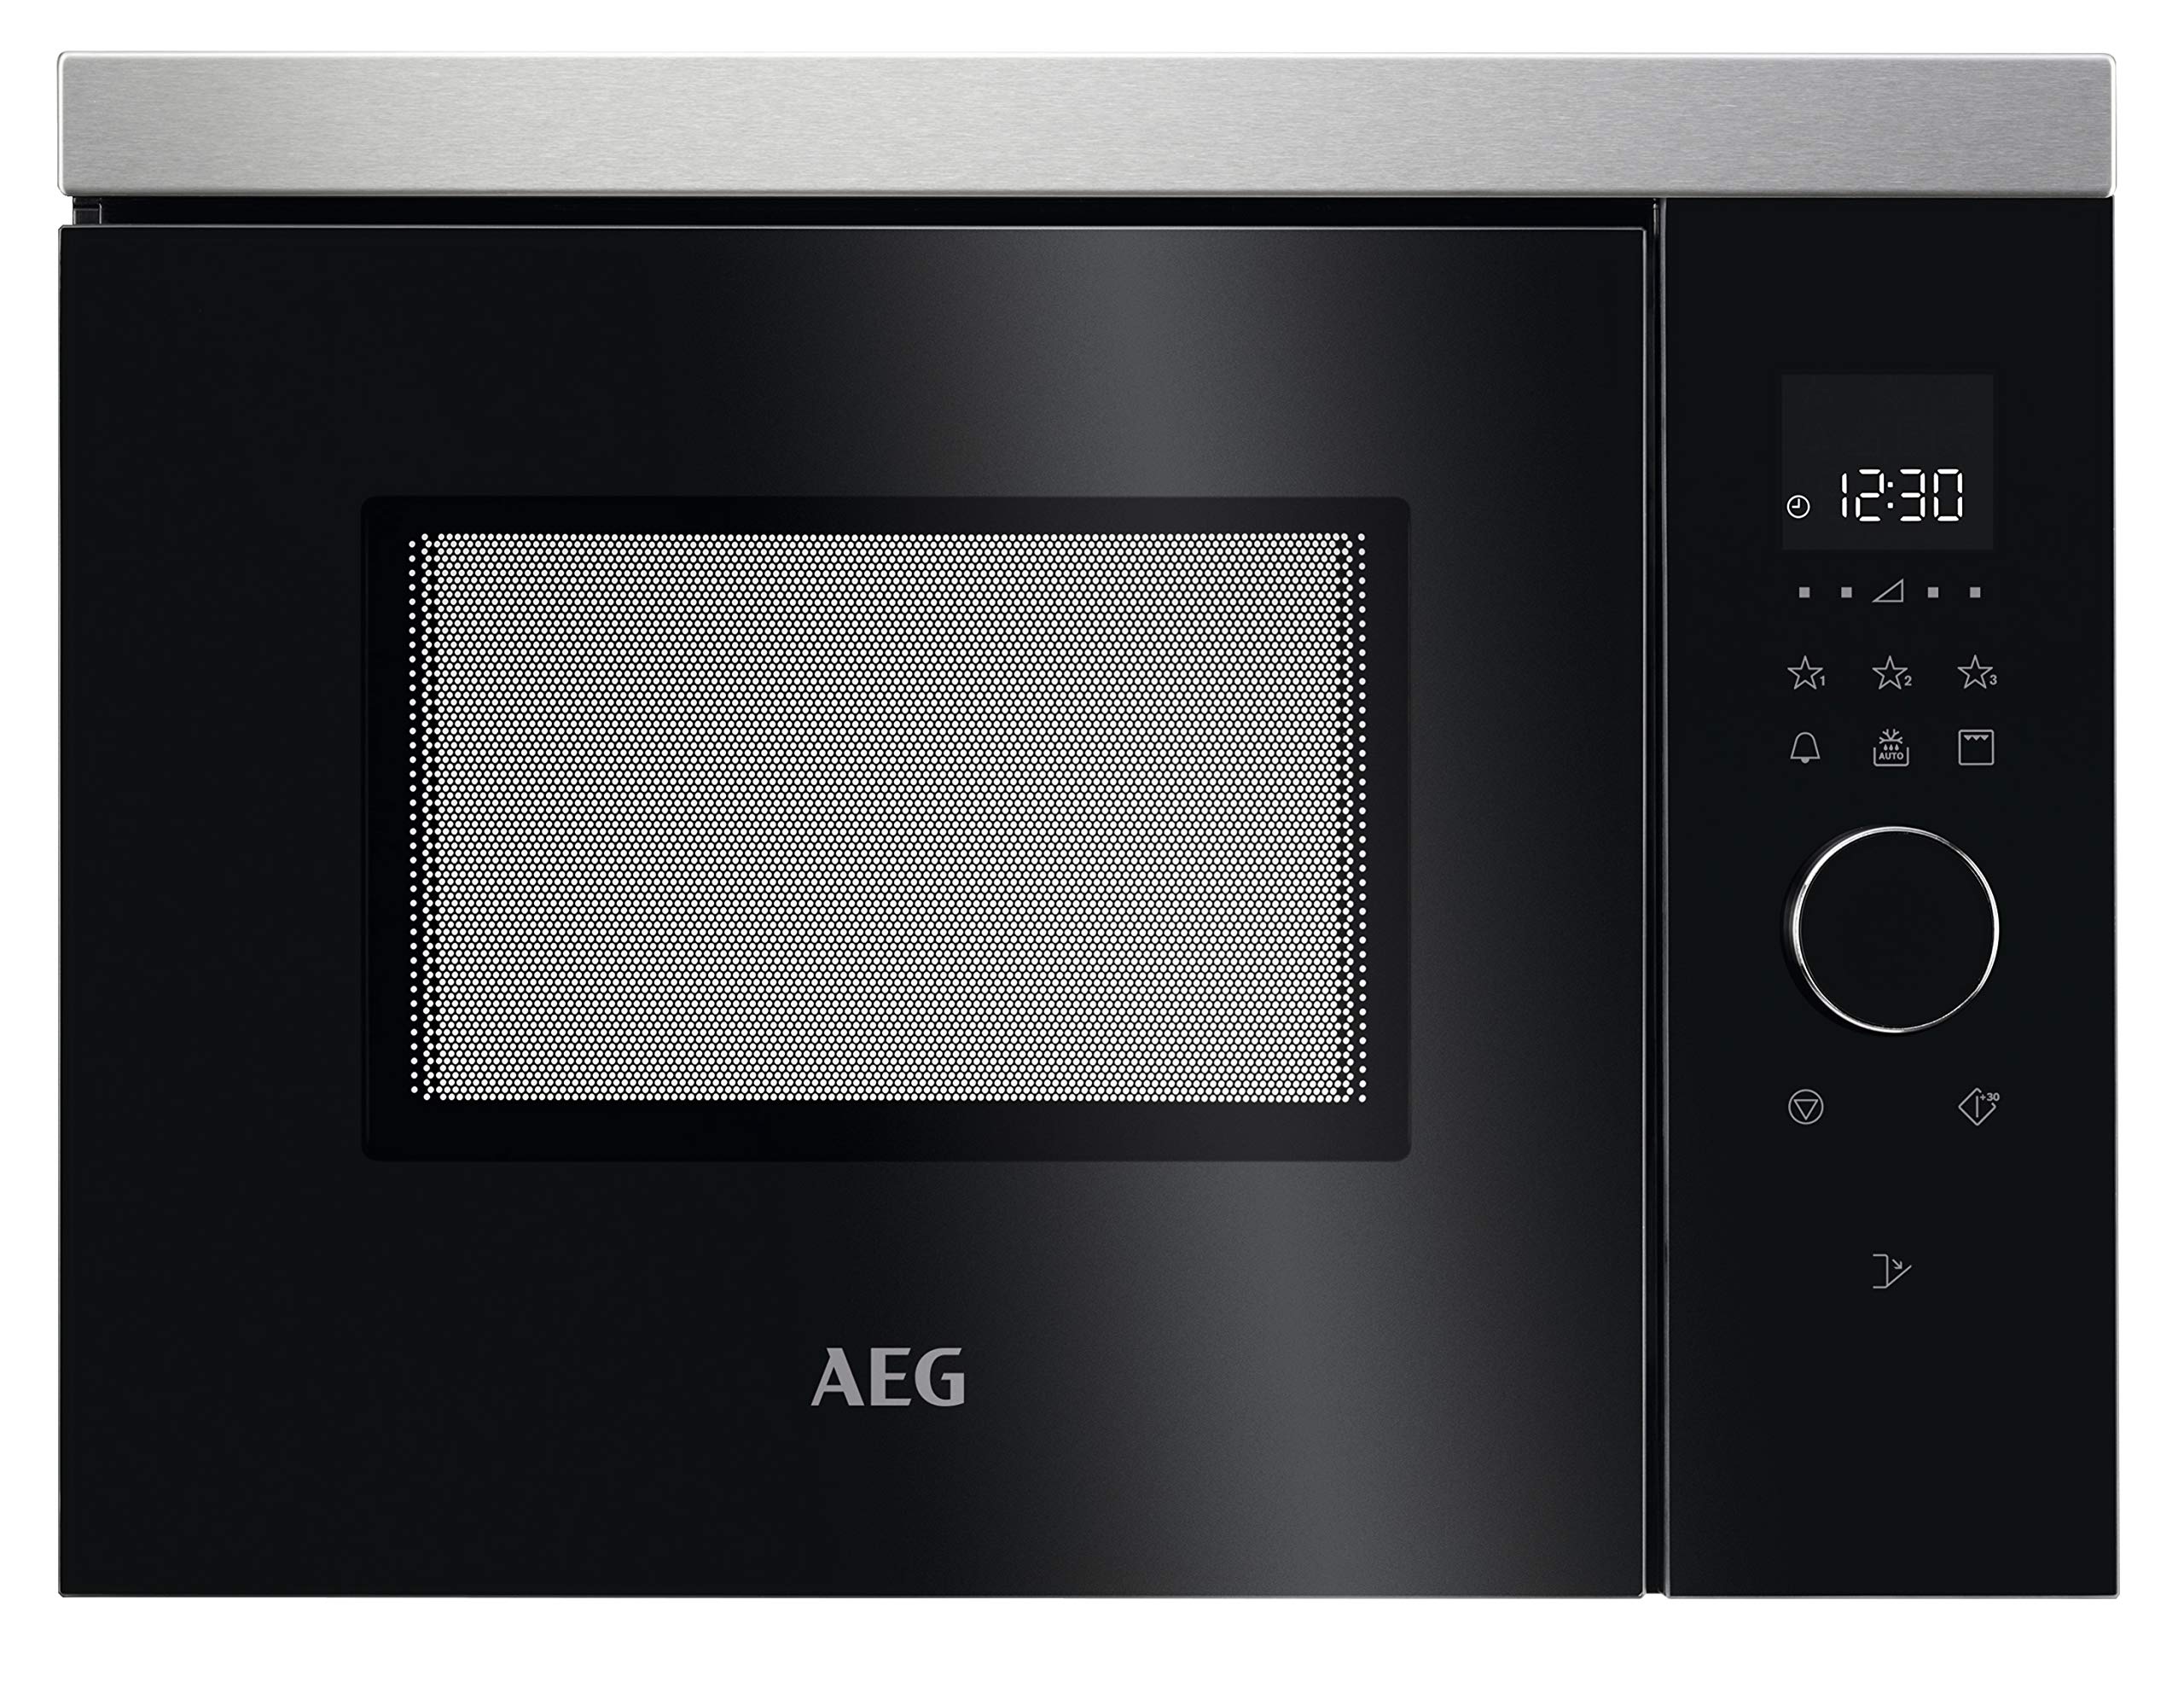 AEG MBB1755DEM 50cm Einbau-Mikrowelle / Touch-Bedienung / Grillfunktion / Display mit Uhr